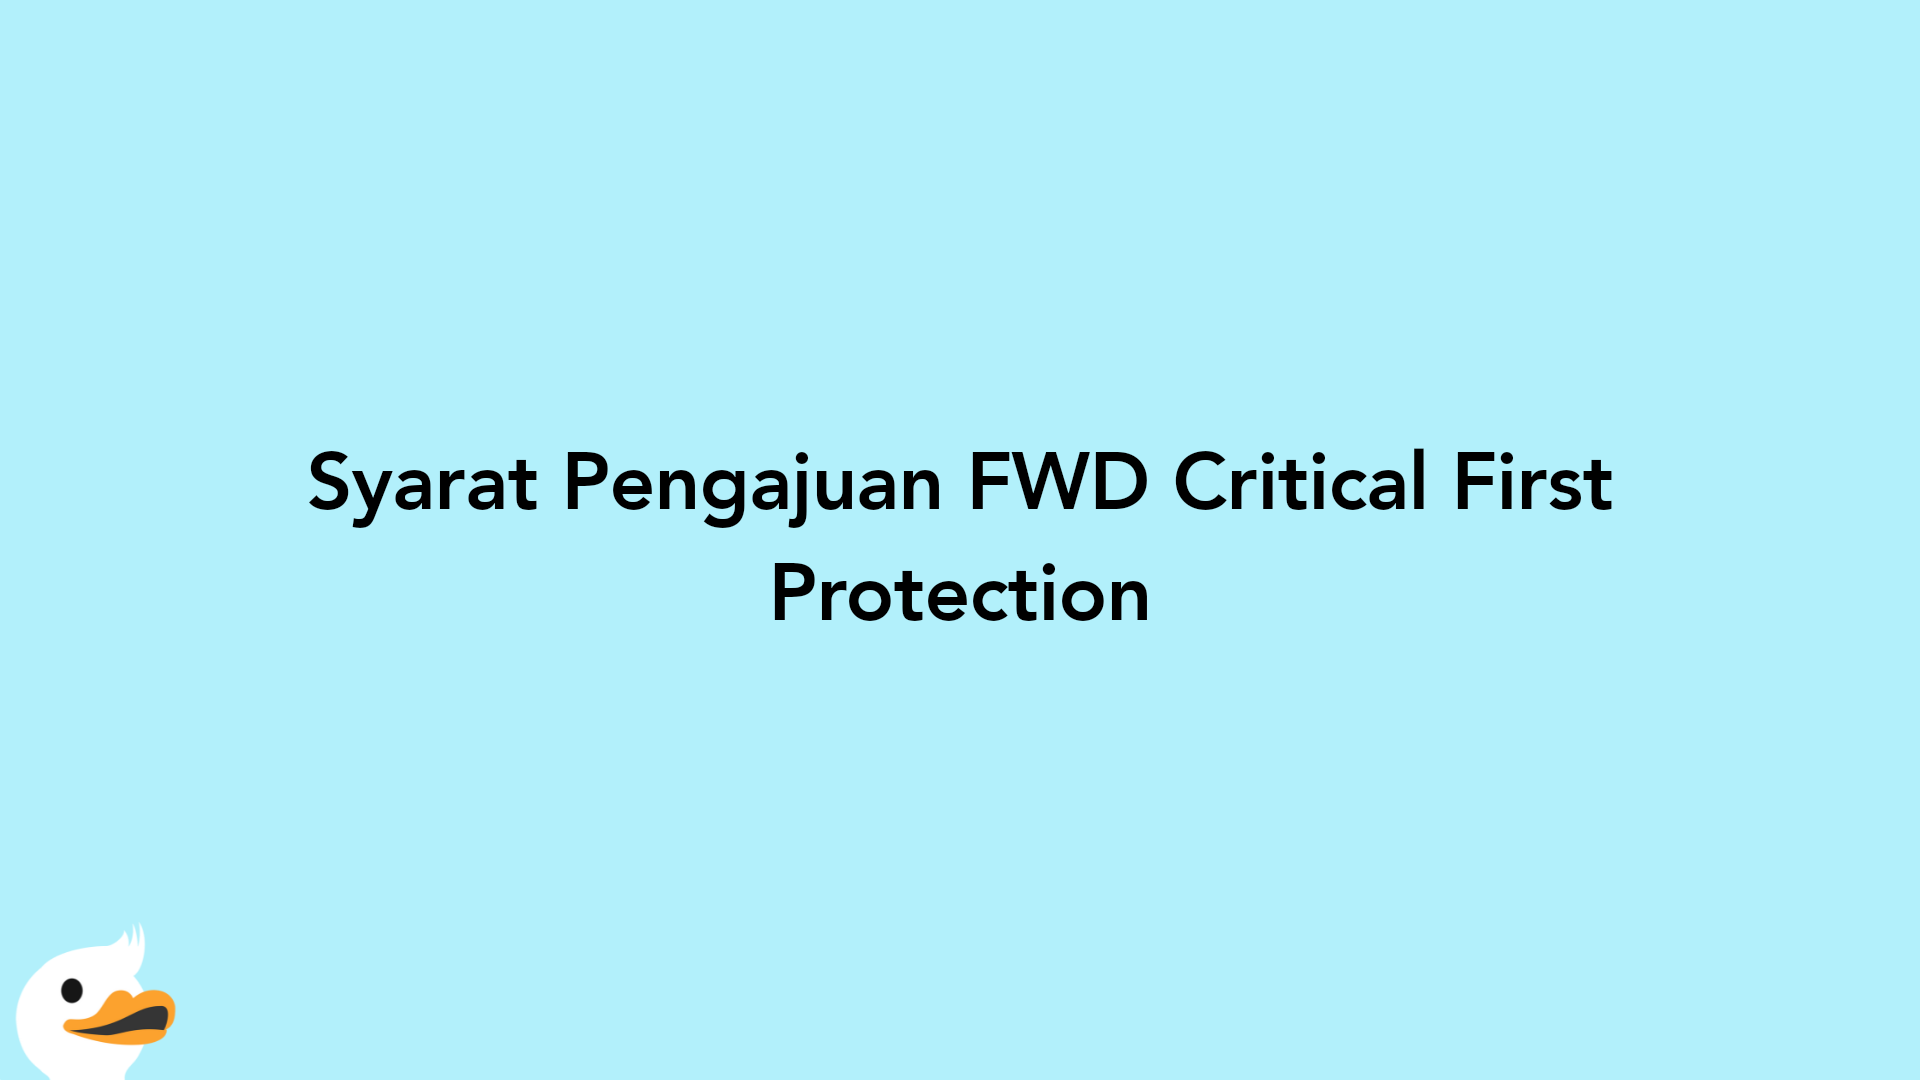 Syarat Pengajuan FWD Critical First Protection